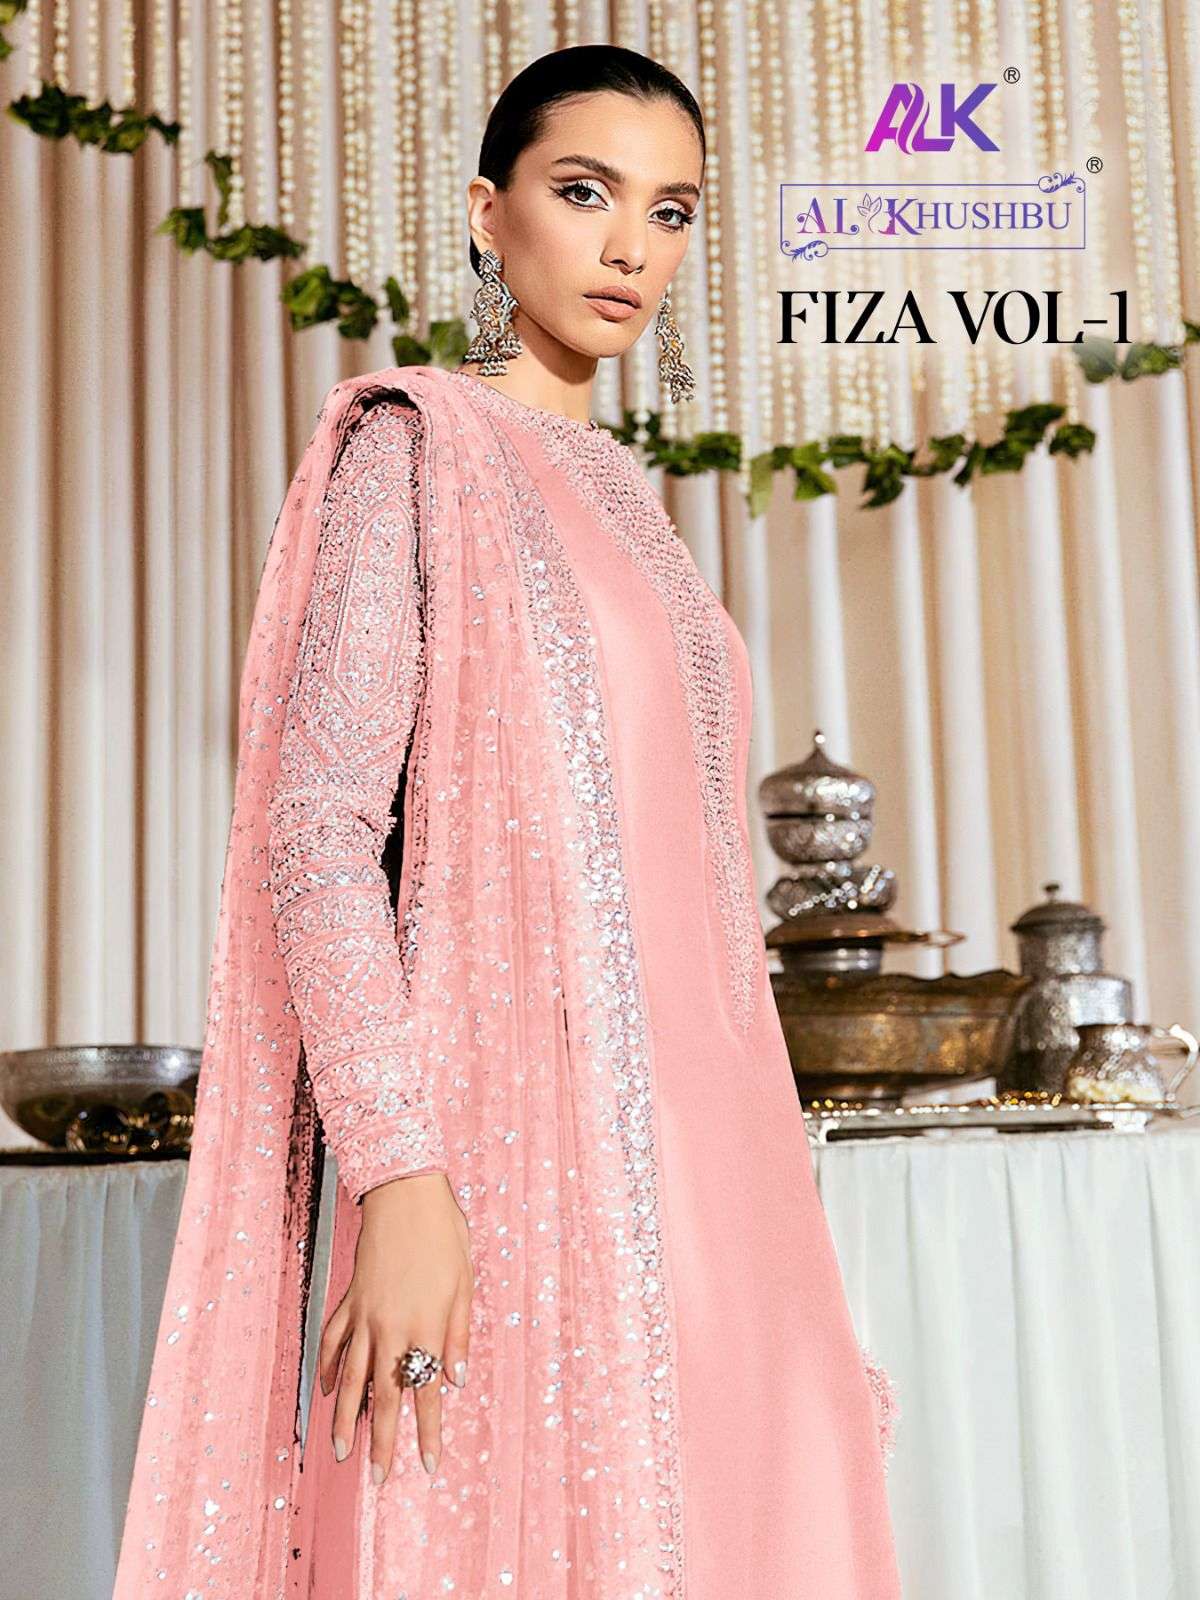 al khushbu fiza vol 1 designer wedding pakistani concept salwar kameez collection 